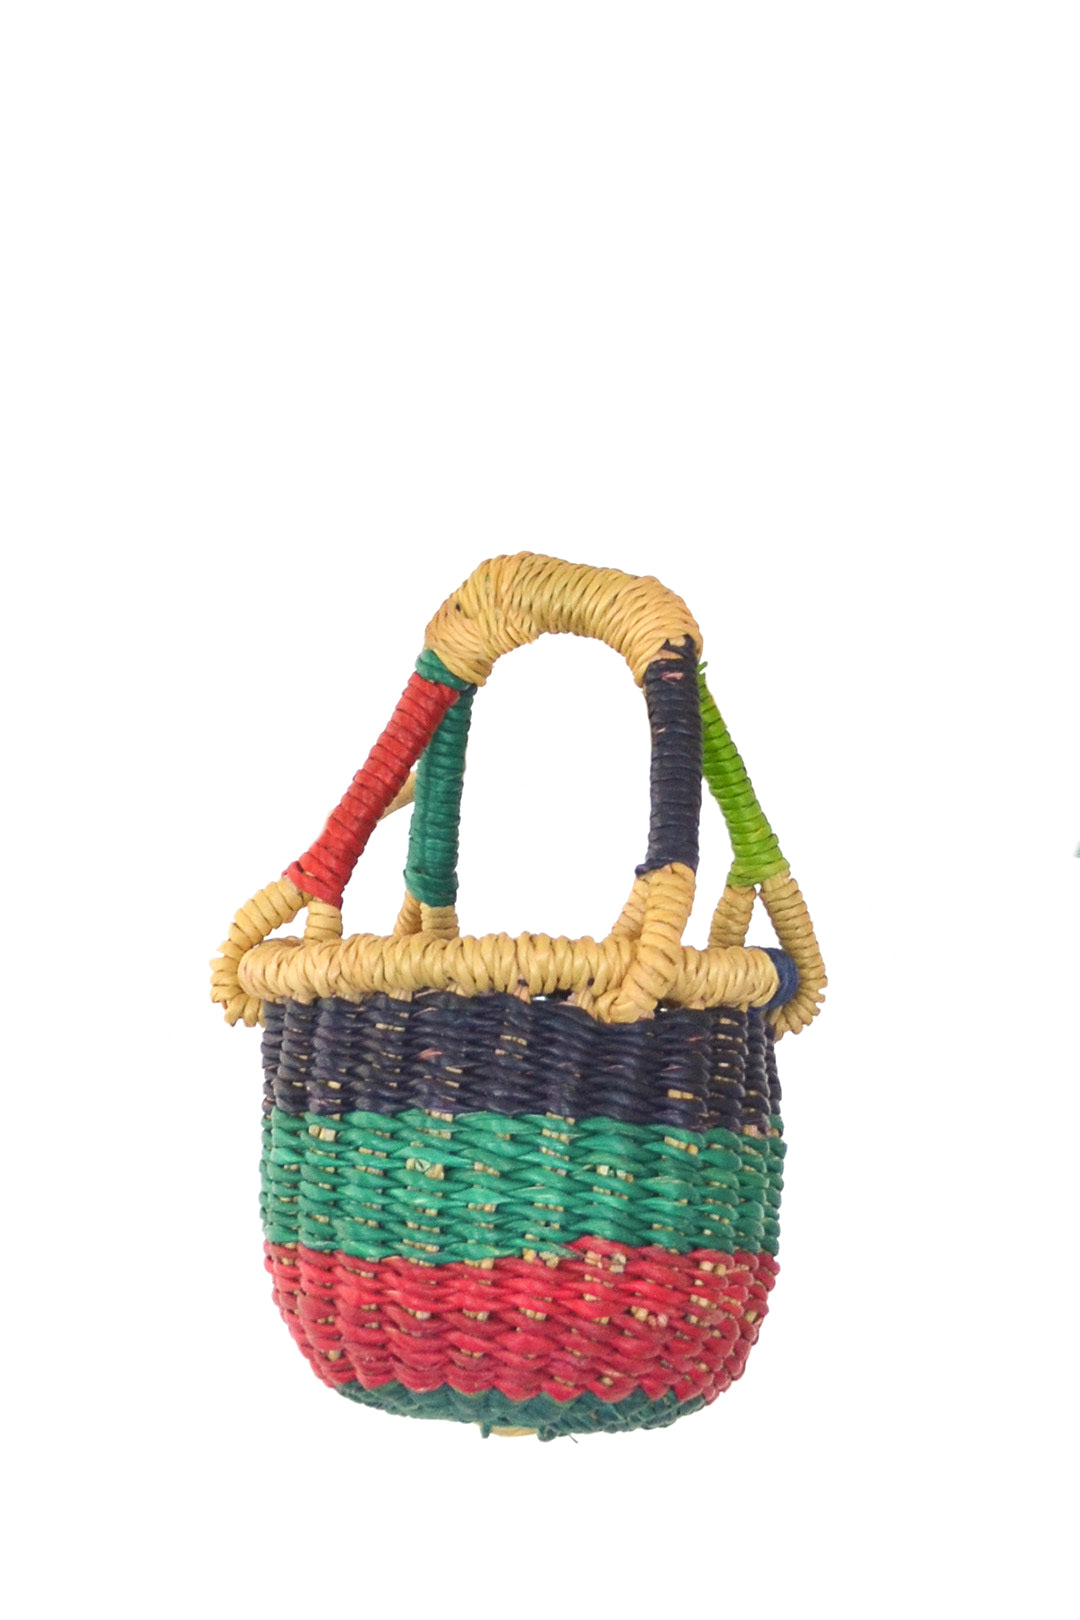 Berry Stripe Teeny Tiny Bolga Baskets